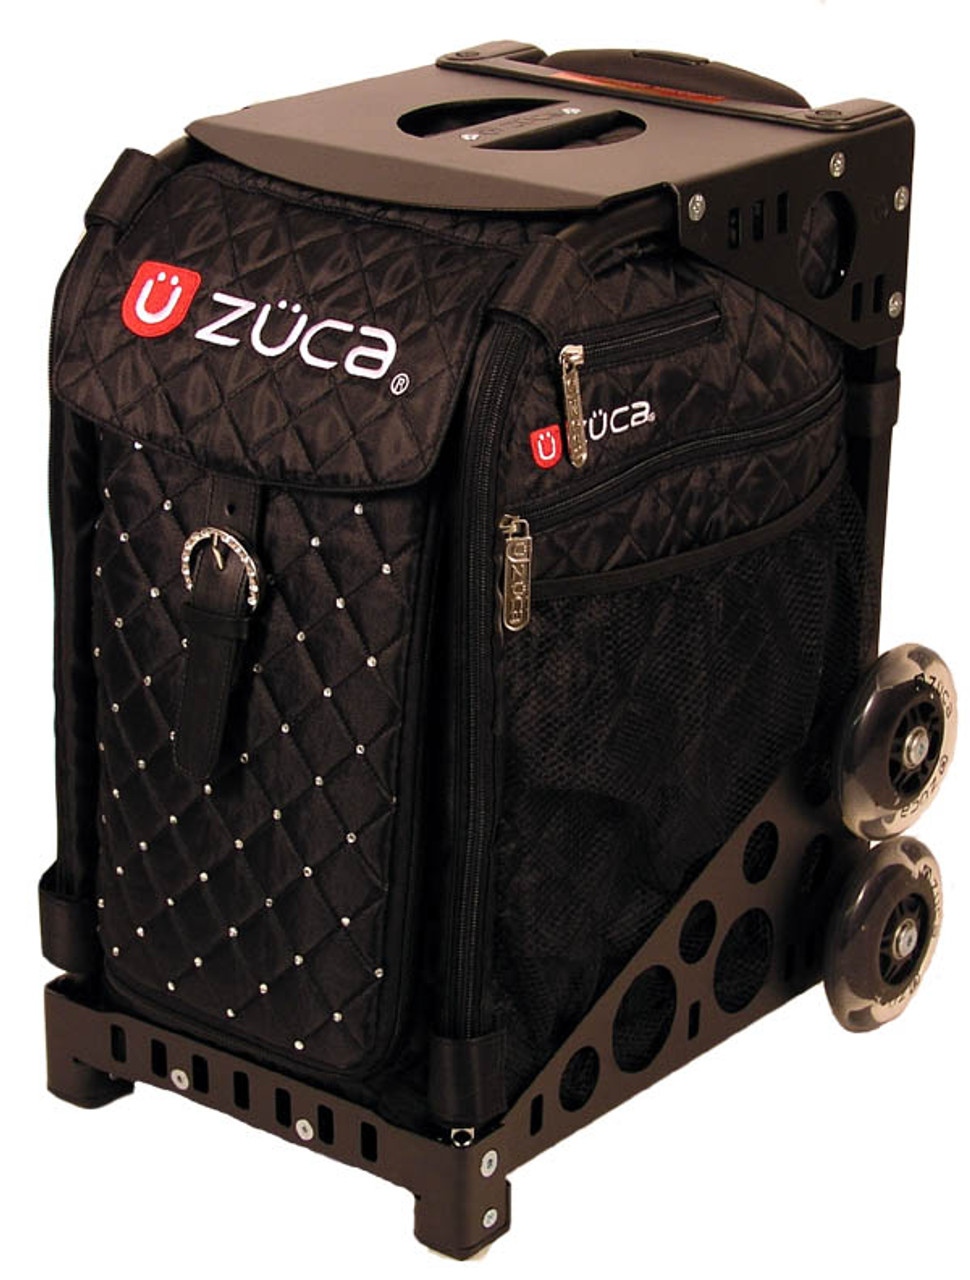 ZÜCA Pro Cart - Includes (3) Small Ballistic Nylon Pouches